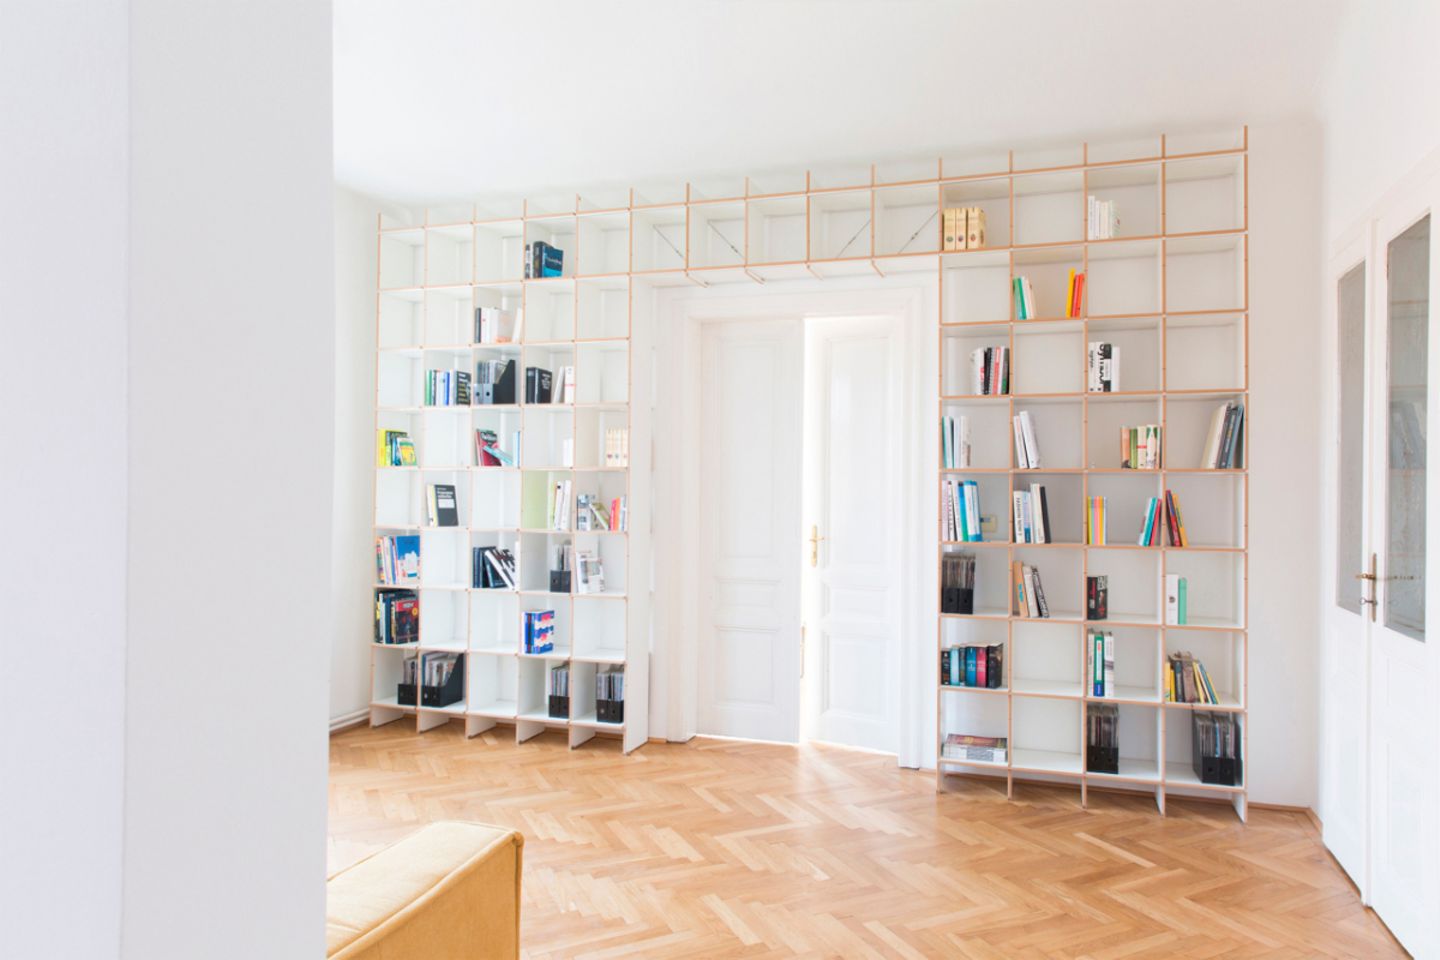 Großer, heller Raum mit wandfüllendem Bücherregal mit Türüberbau